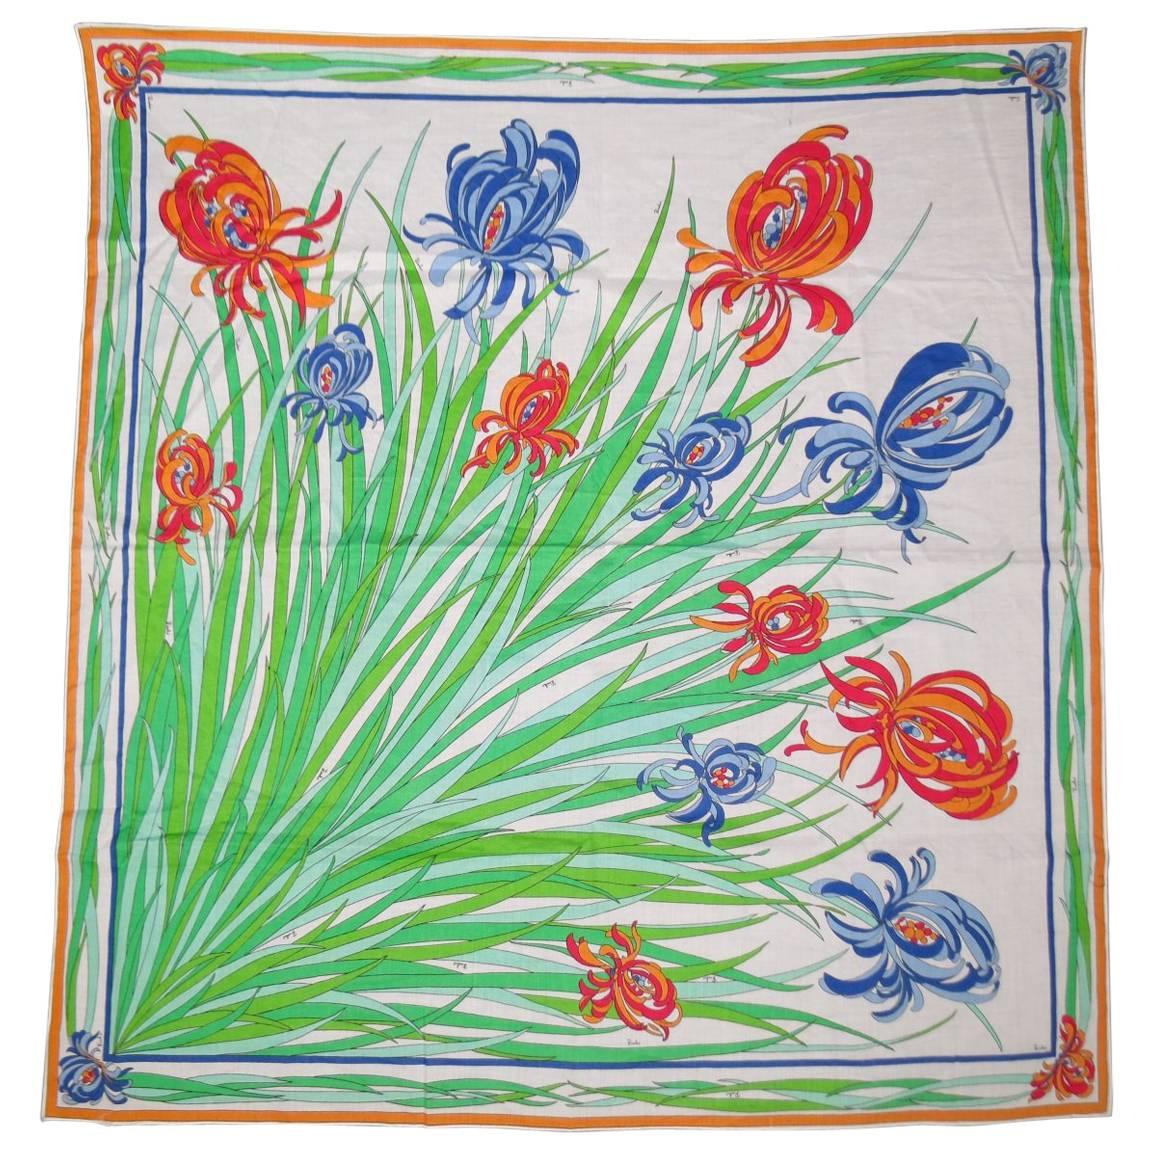 VIntage EMILIO PUCCI Multi-Color Floral Print Cotton Scarf